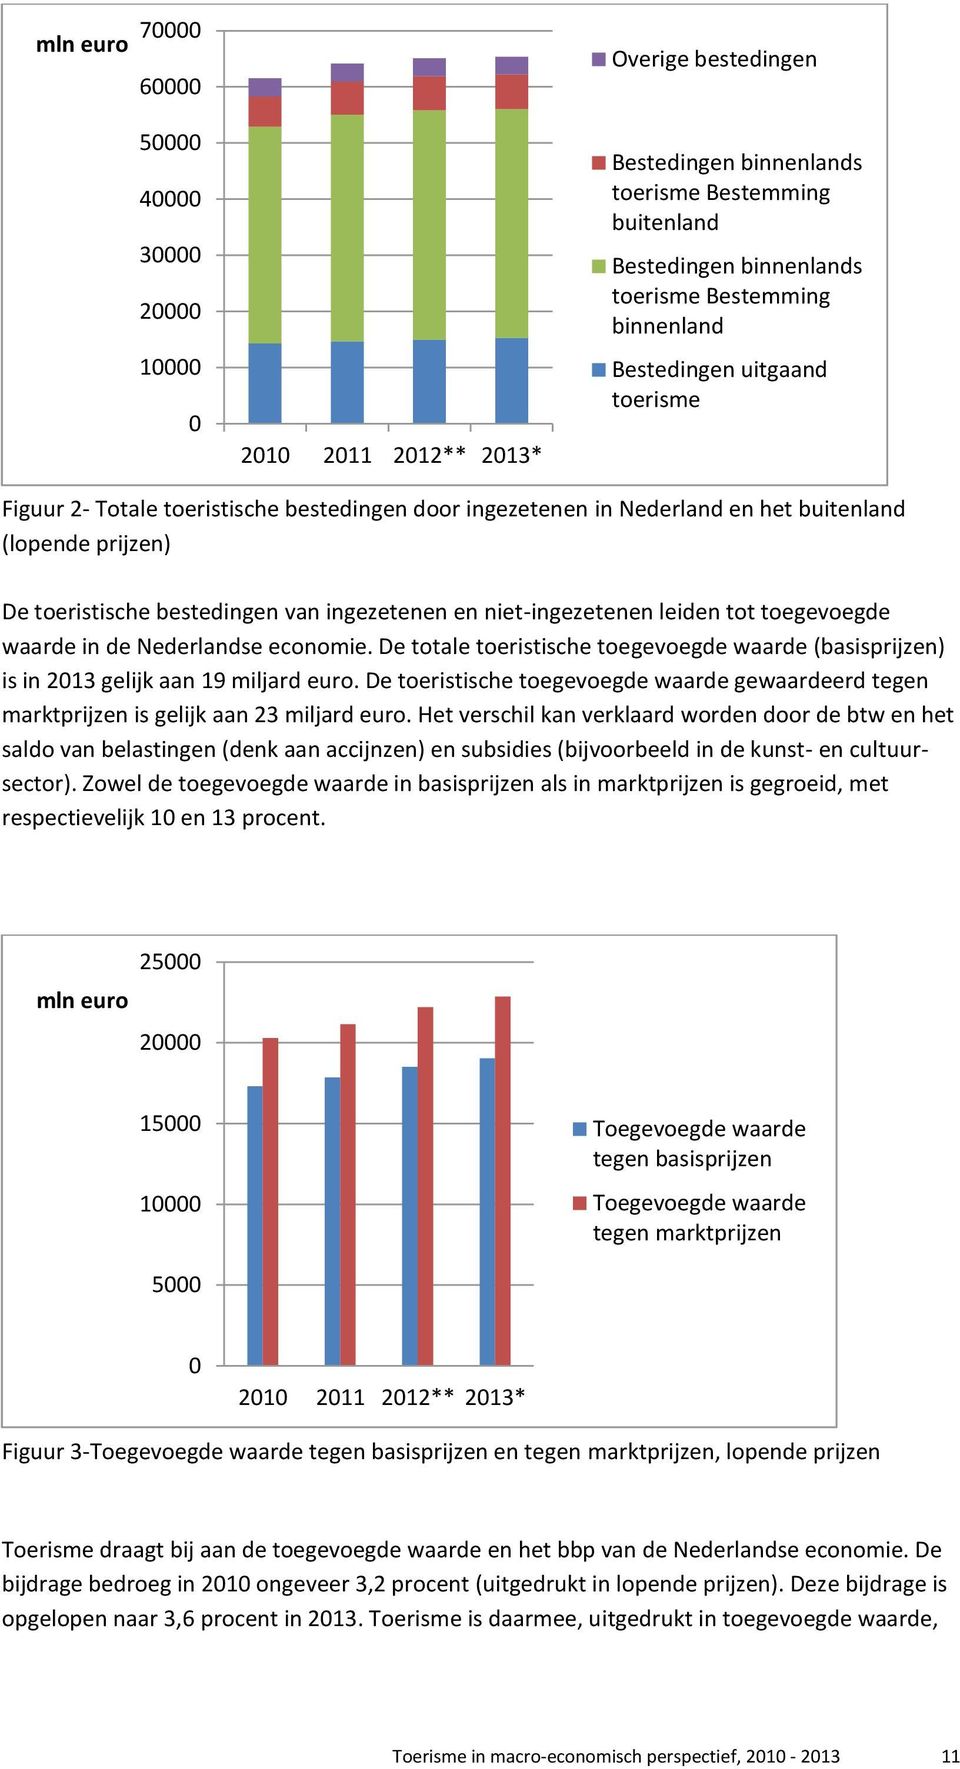 niet-ingezetenen leiden tot toegevoegde waarde in de Nederlandse economie. De totale toeristische toegevoegde waarde (basisprijzen) is in 2013 gelijk aan 19 miljard euro.